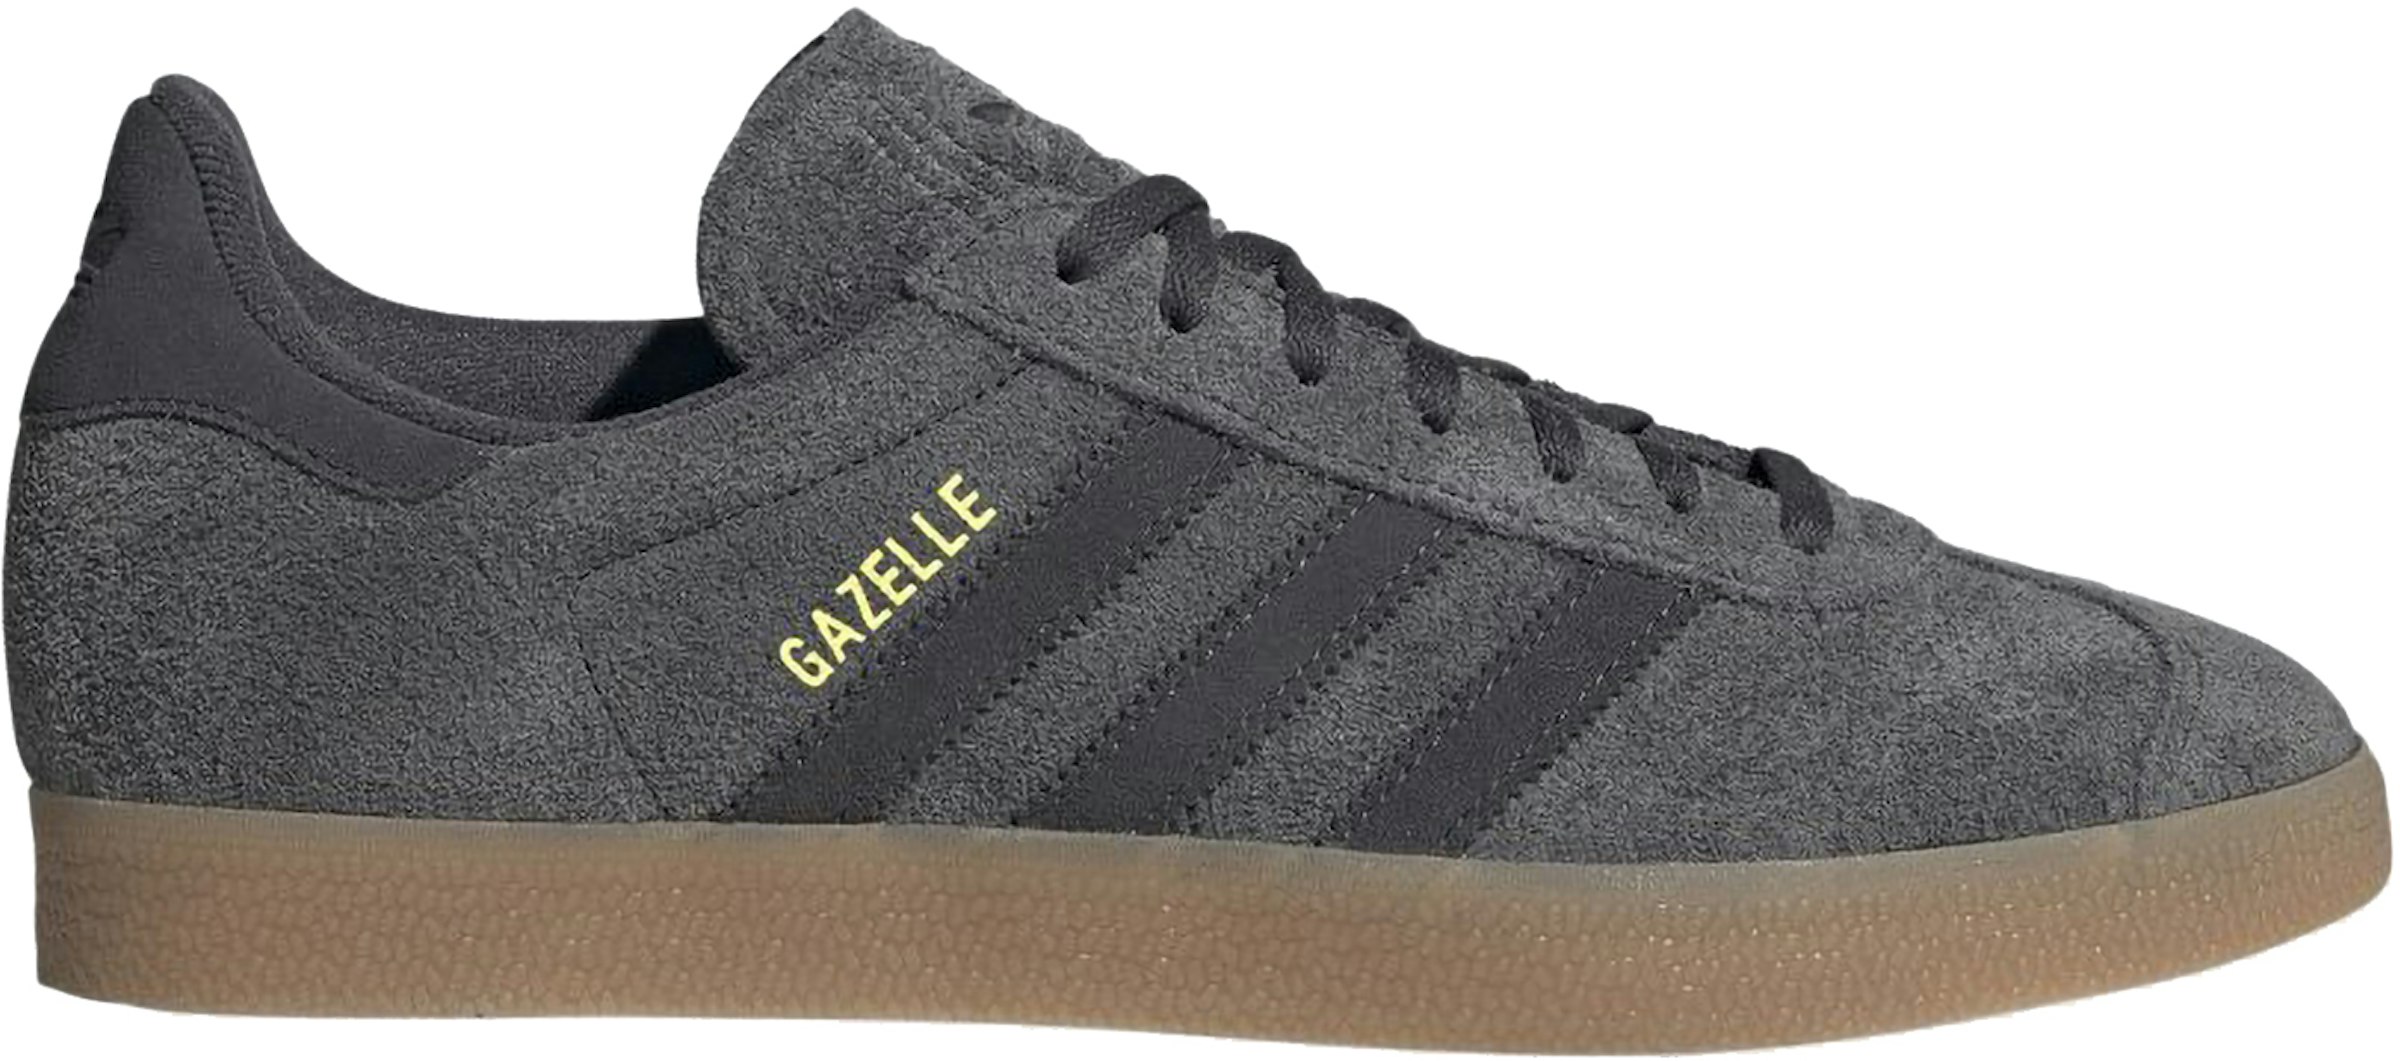 adidas Gazelle Grey Carbon - - US